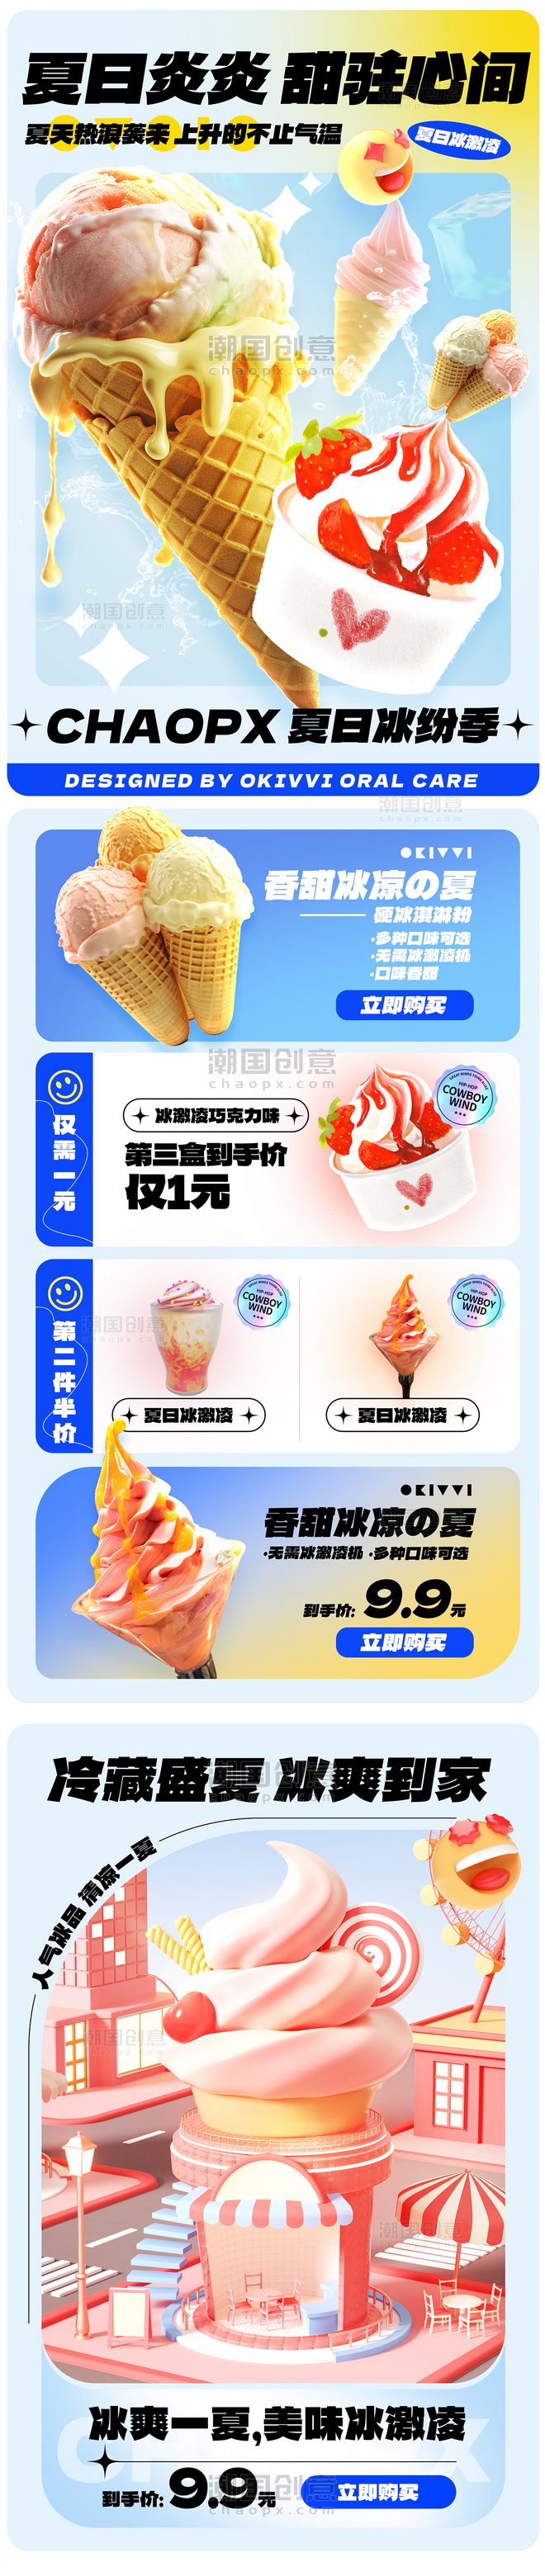 冰激凌热卖电商促销美食餐饮营销长图活动页设计